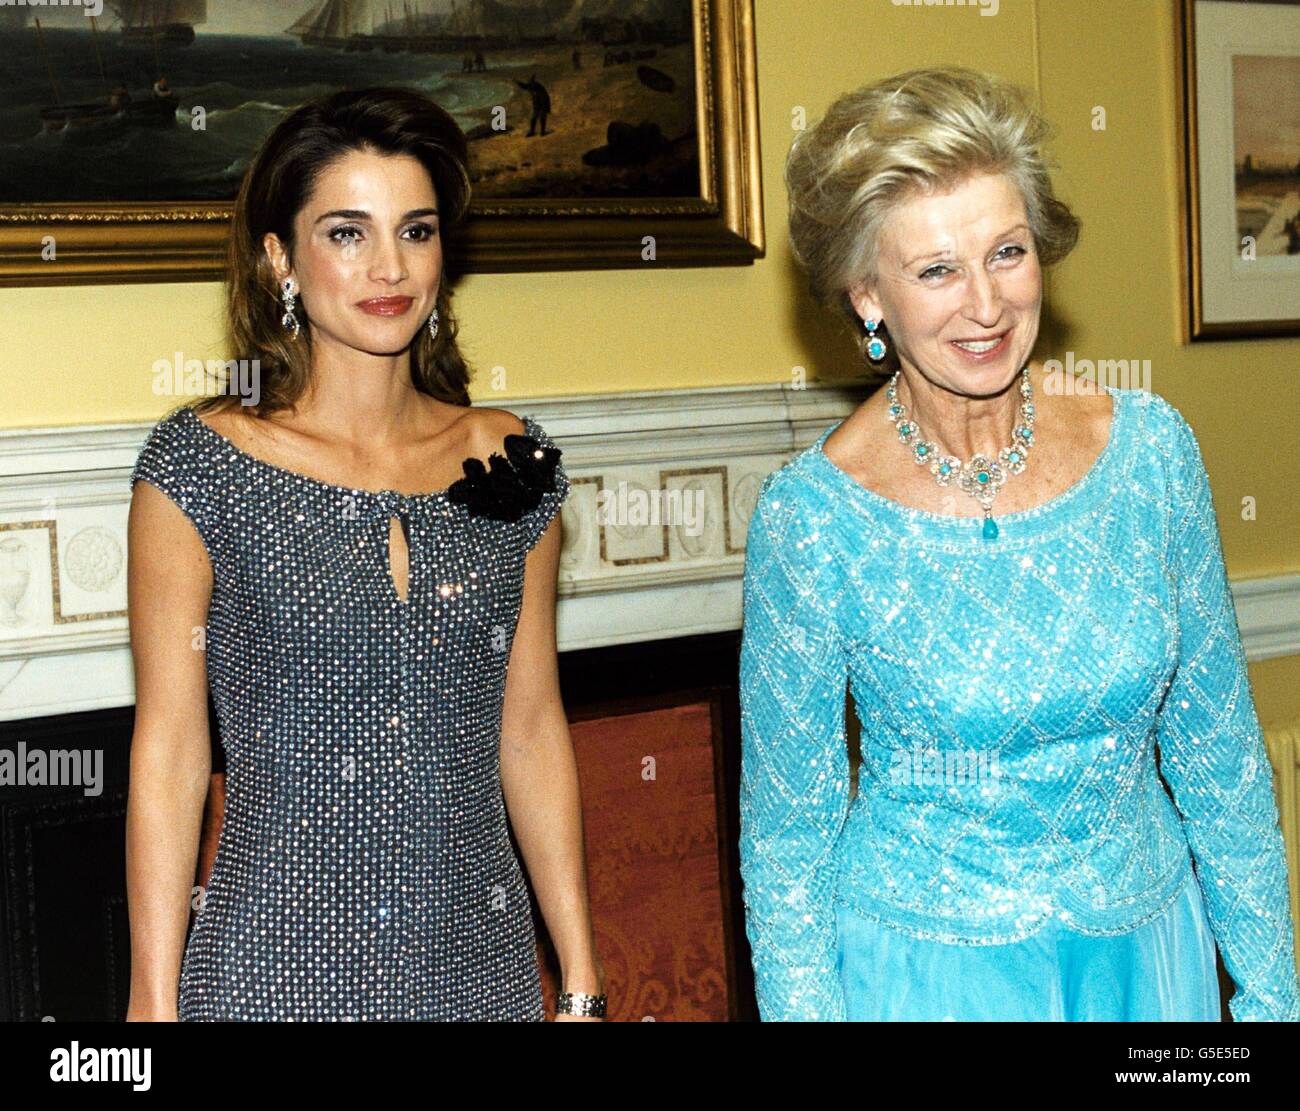 La princesse Alexandra (R) et la reine Rania de Jordanie posent pour les médias après leur arrivée au Bureau des affaires étrangères et du Commonwealth, à Londres, pour le bal de charité du gala des nuits du milieu de l'été, en aide à la Croix-Rouge britannique. Banque D'Images